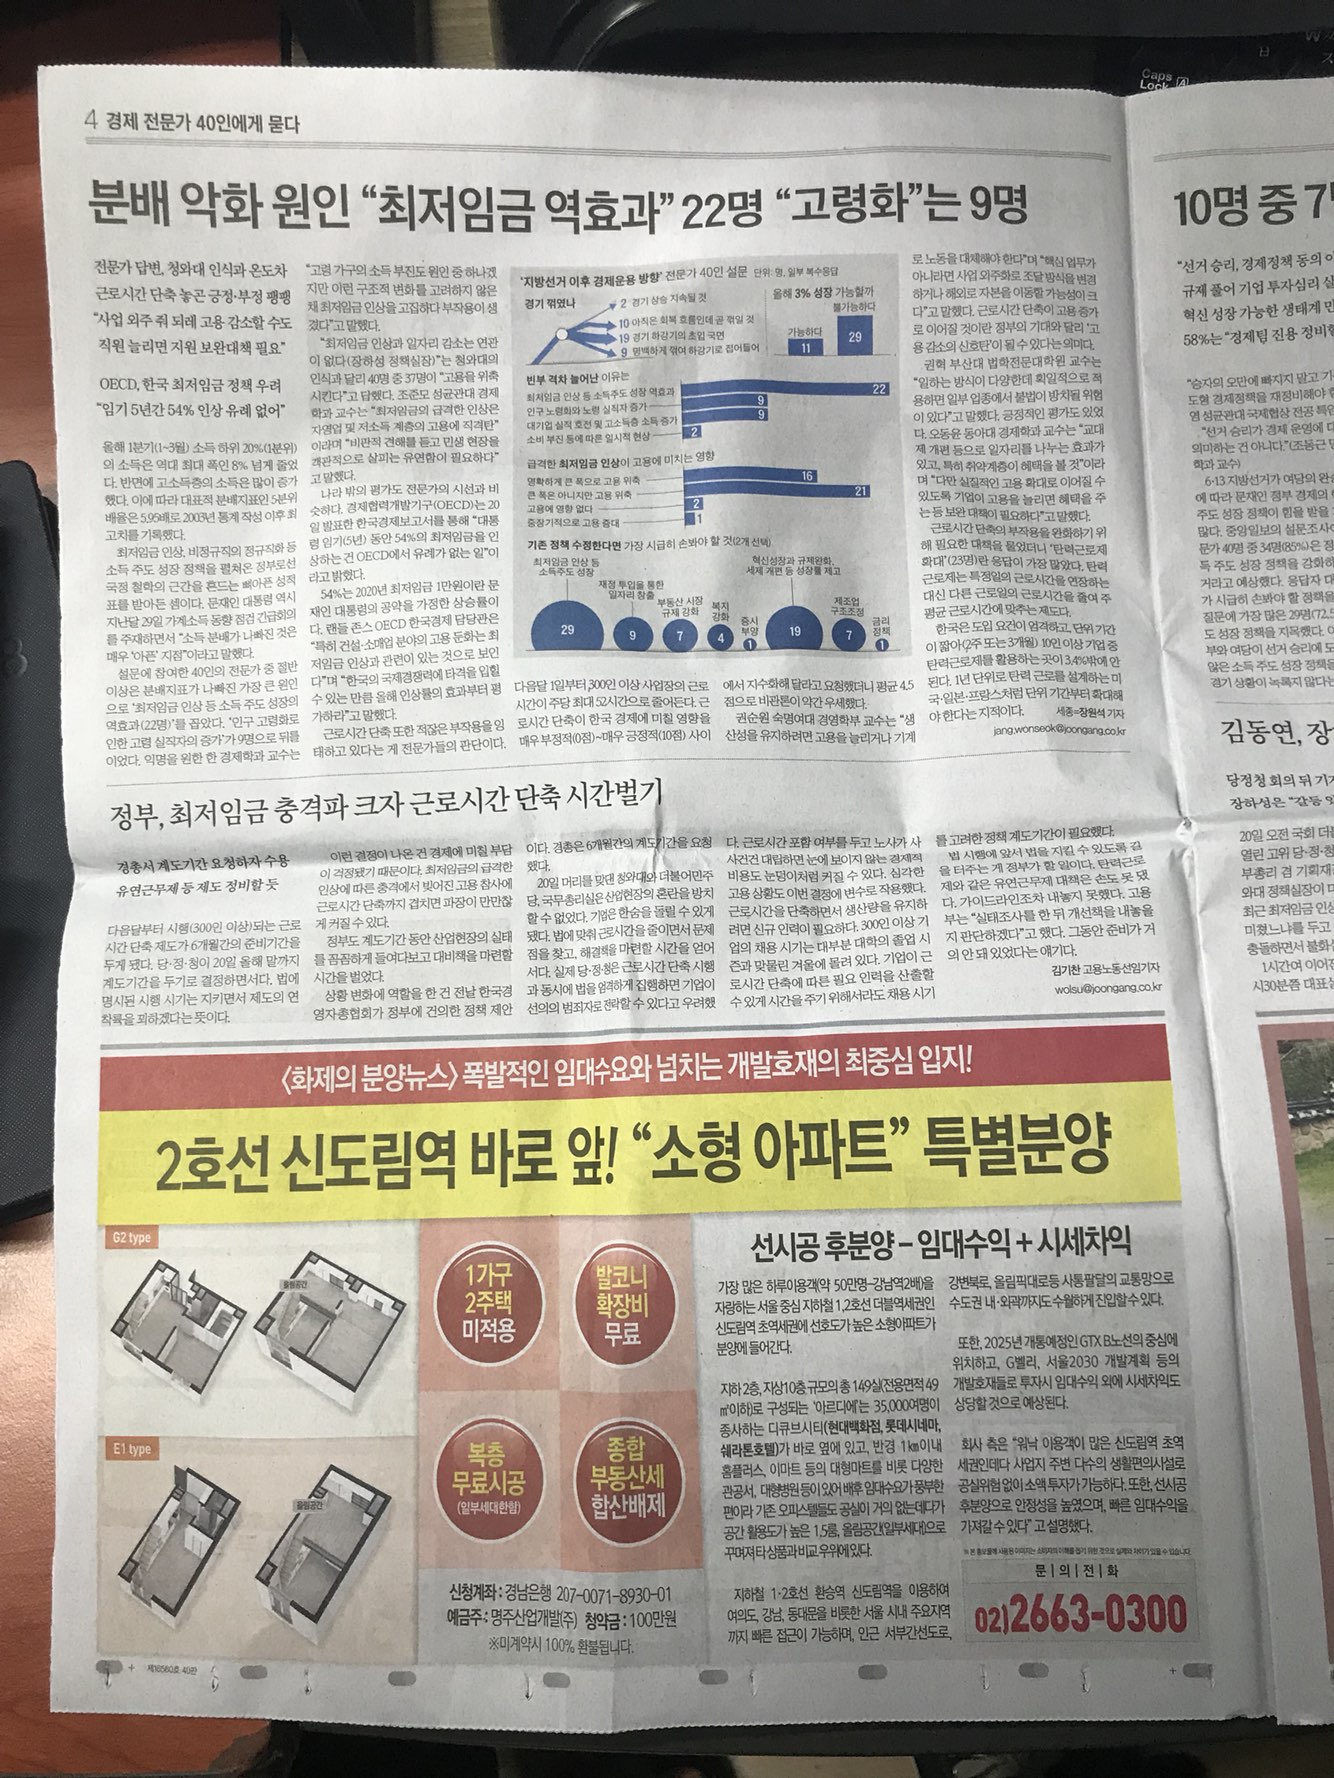 6월21일 중앙일보 4 신도림 아르디에 (5단통).jpg